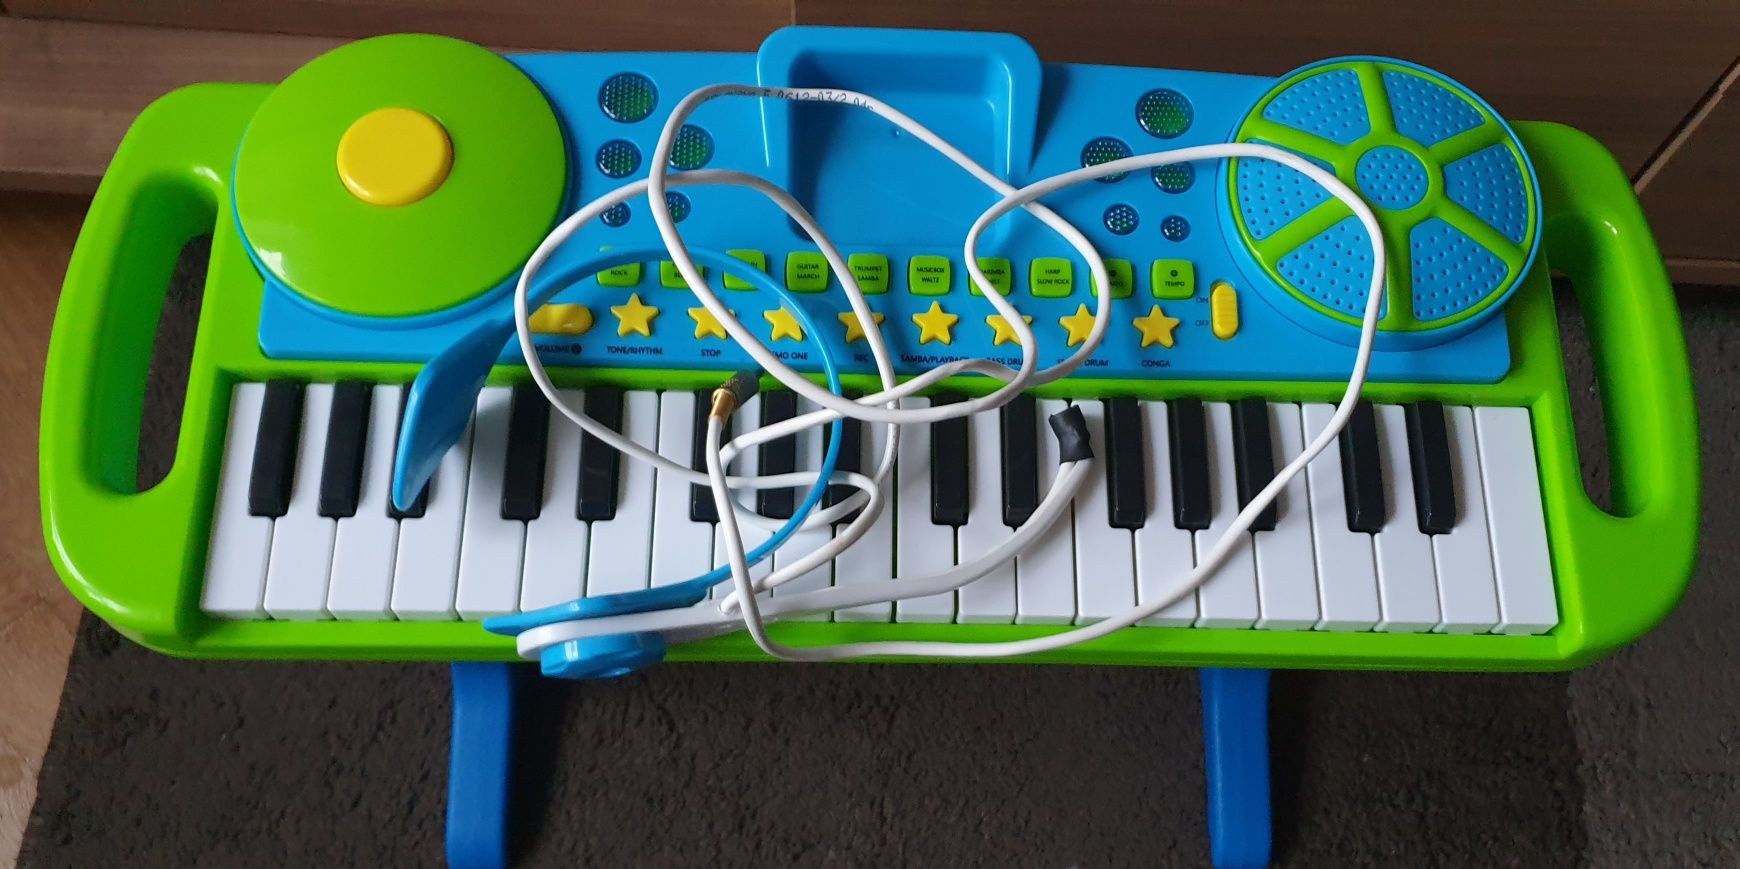 Keyboard, pianinko dziecięce